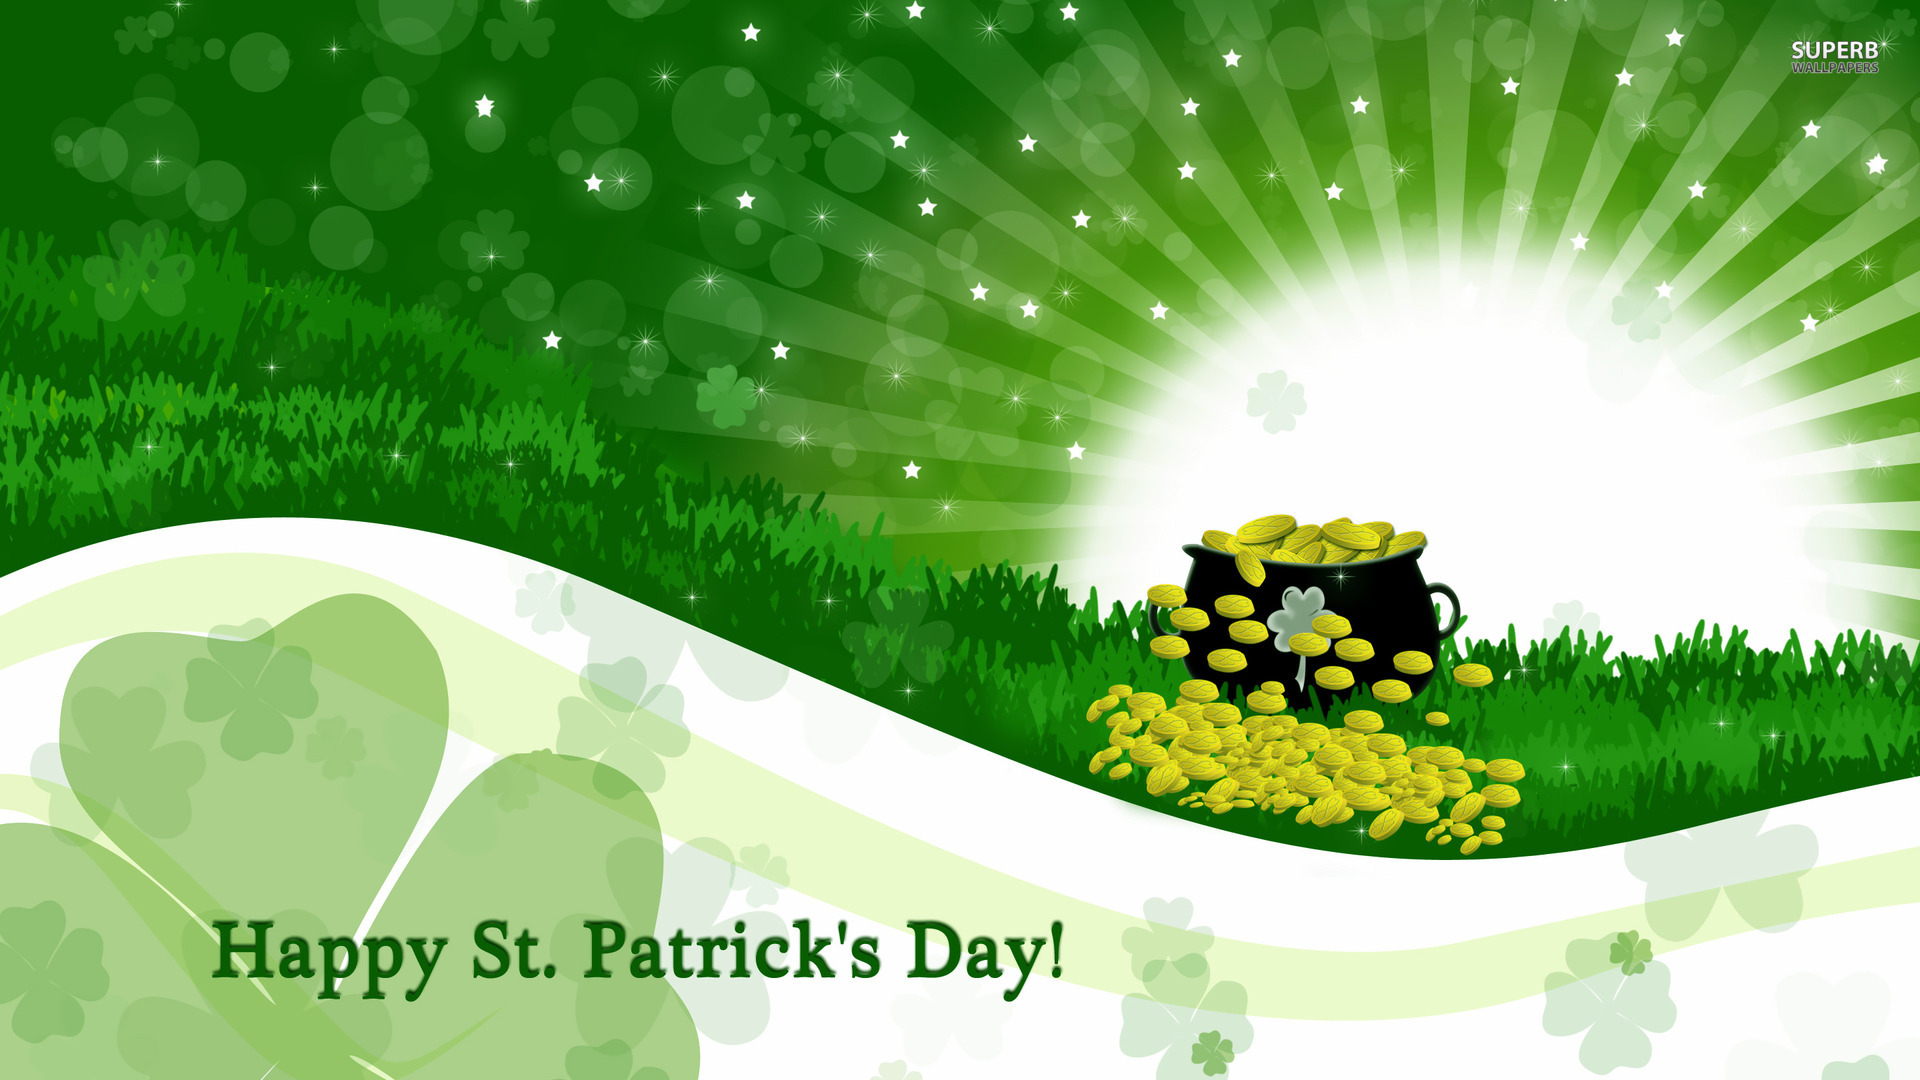 Unique St. Patrick's Day Desktop Background Images, Pictures Free ...